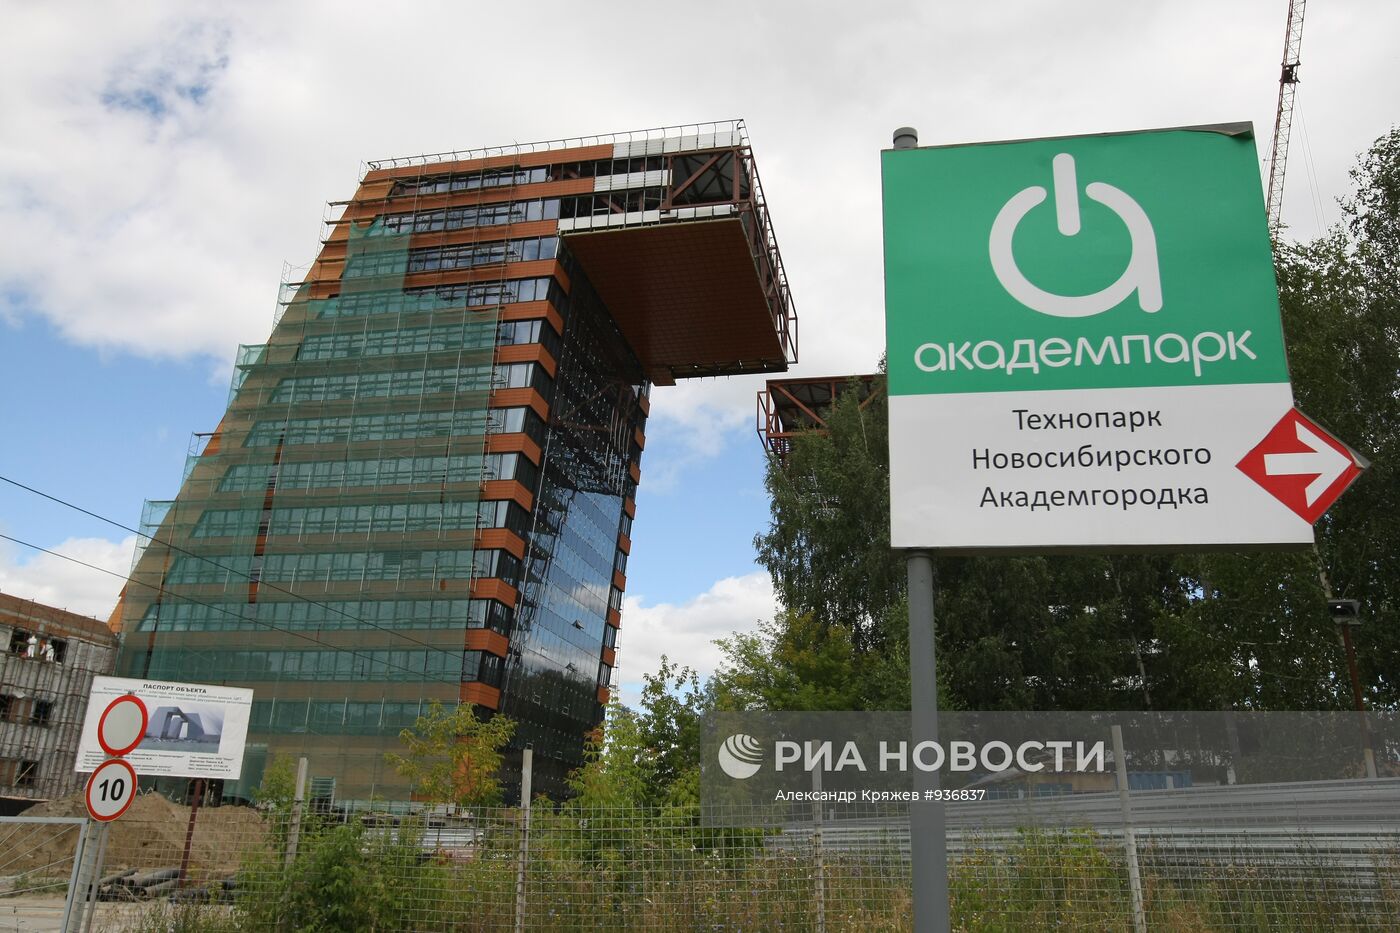 Строительство технопарка новосибирского Академгородка